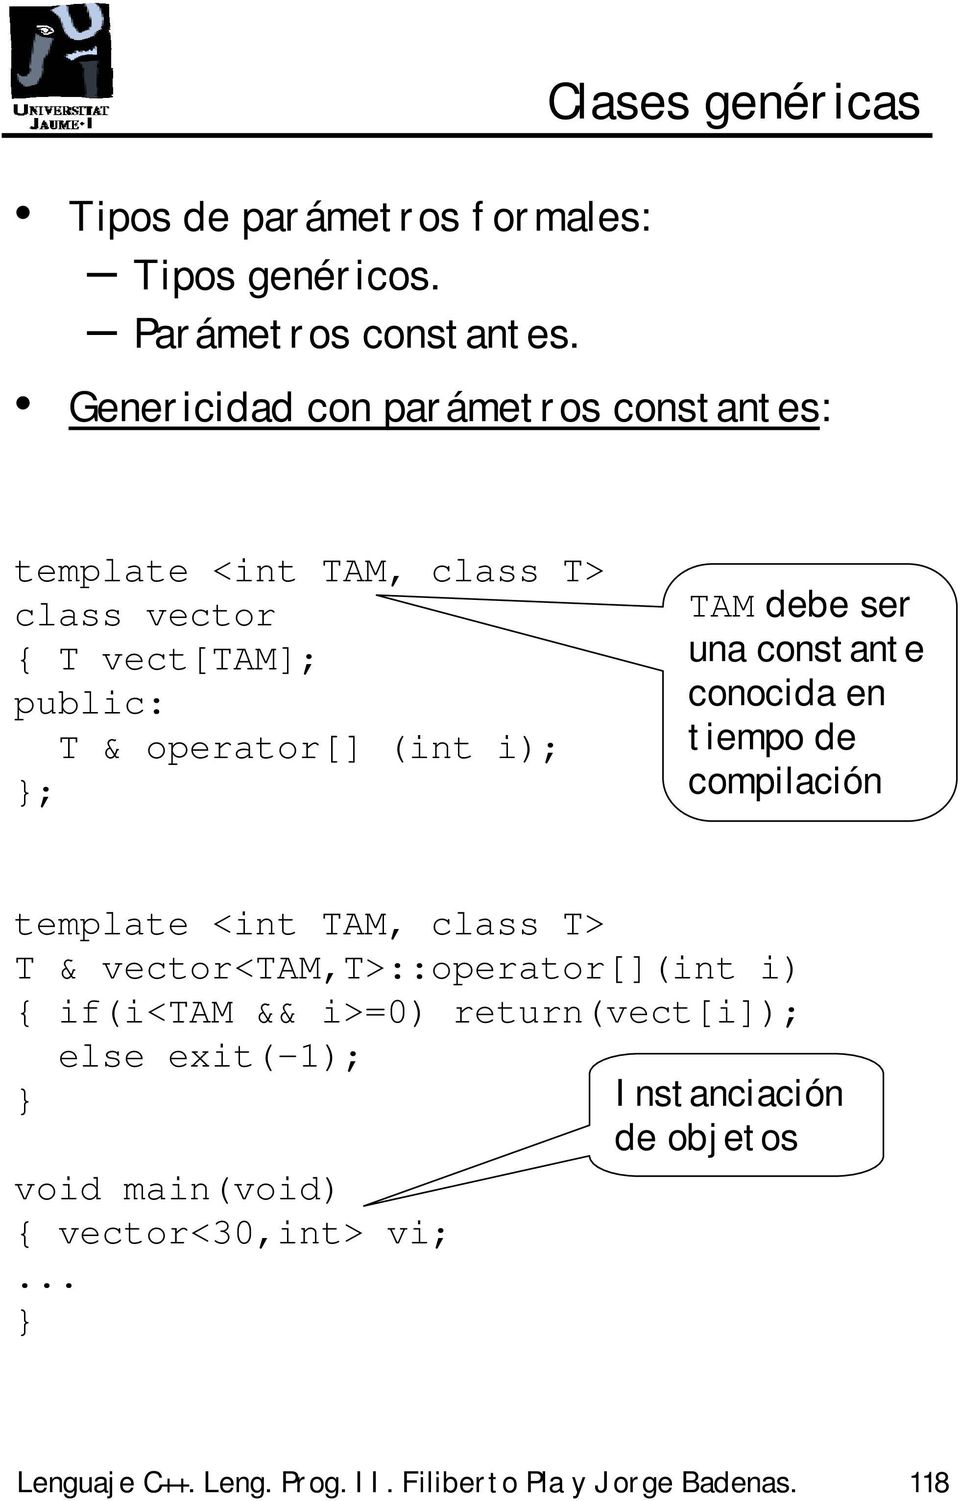 TAM debe ser una constante conocida en tiempo de compilación template <int TAM, class T> T & vector<tam,t>::operator[](int